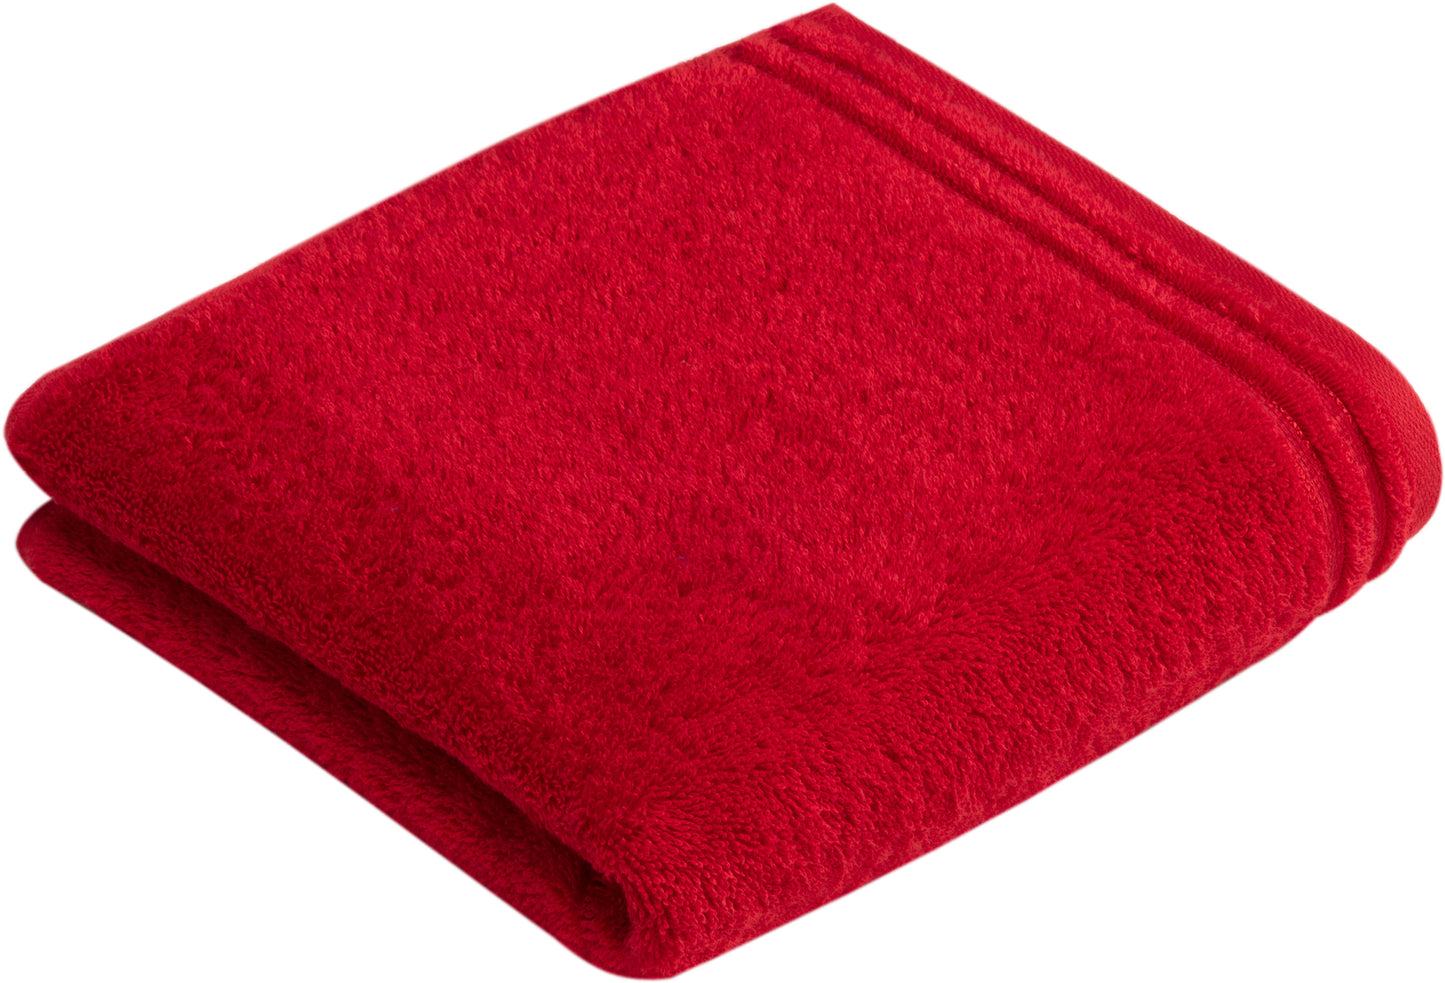 4 Stück Handtuch aus Baumwolle, 50x100cm